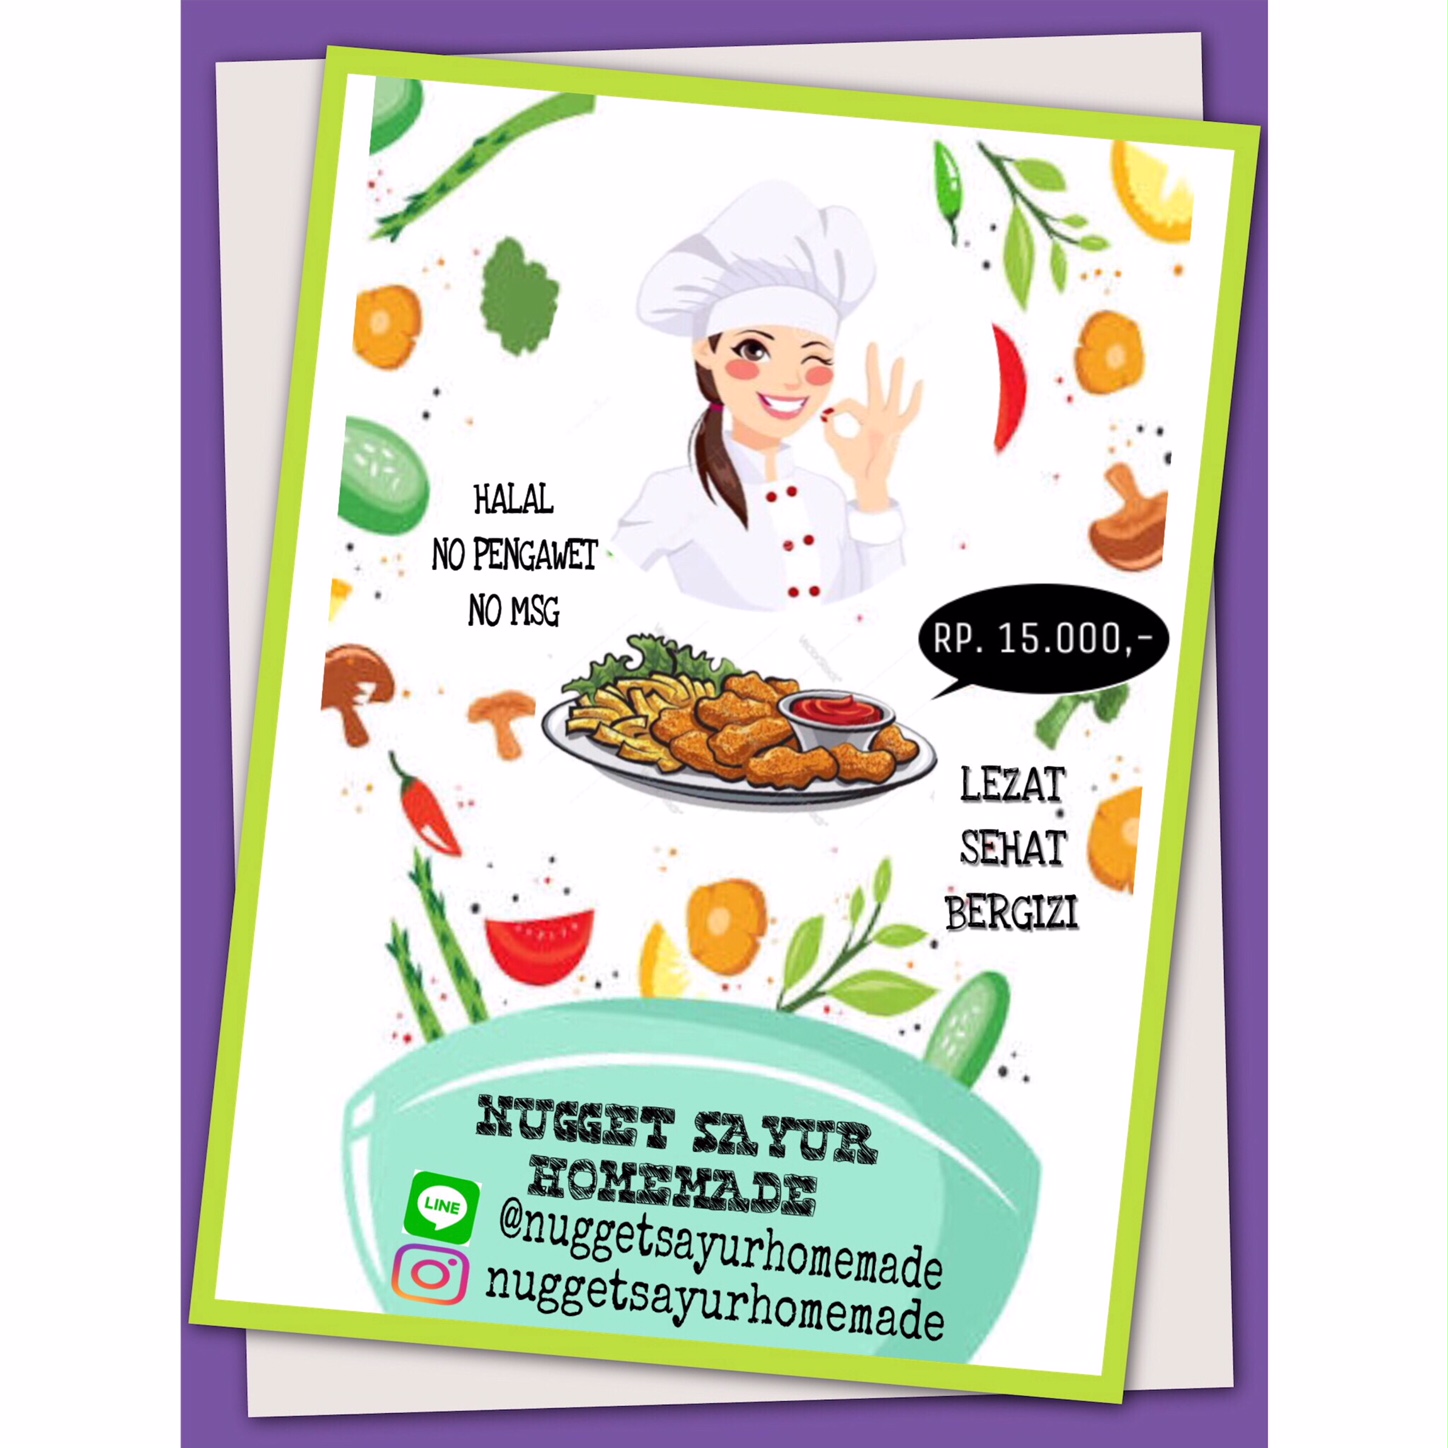  Gambar  Poster  Contoh Iklan Makanan  Sehat  Dan  Bergizi  